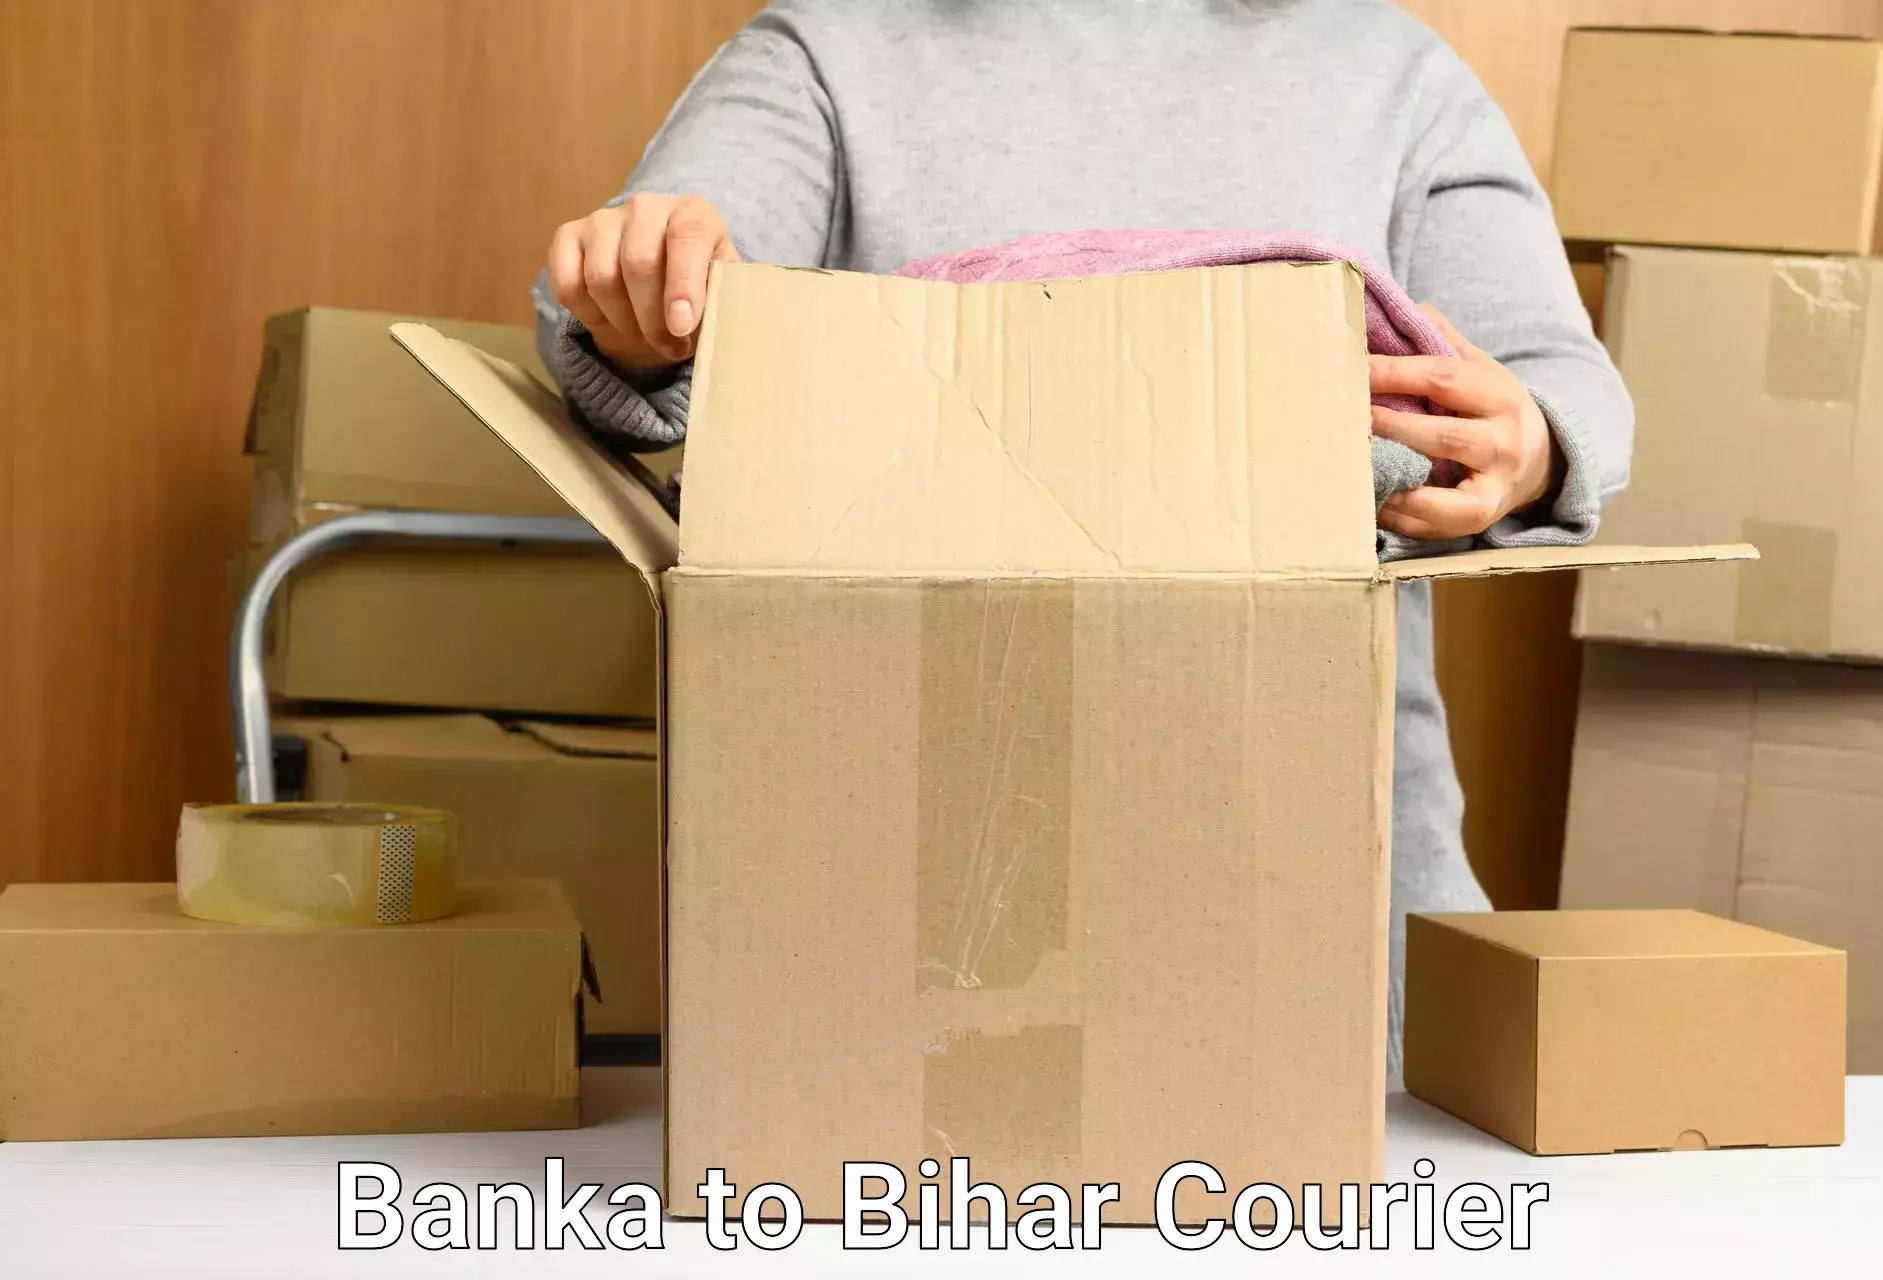 Efficient cargo handling Banka to Bihar